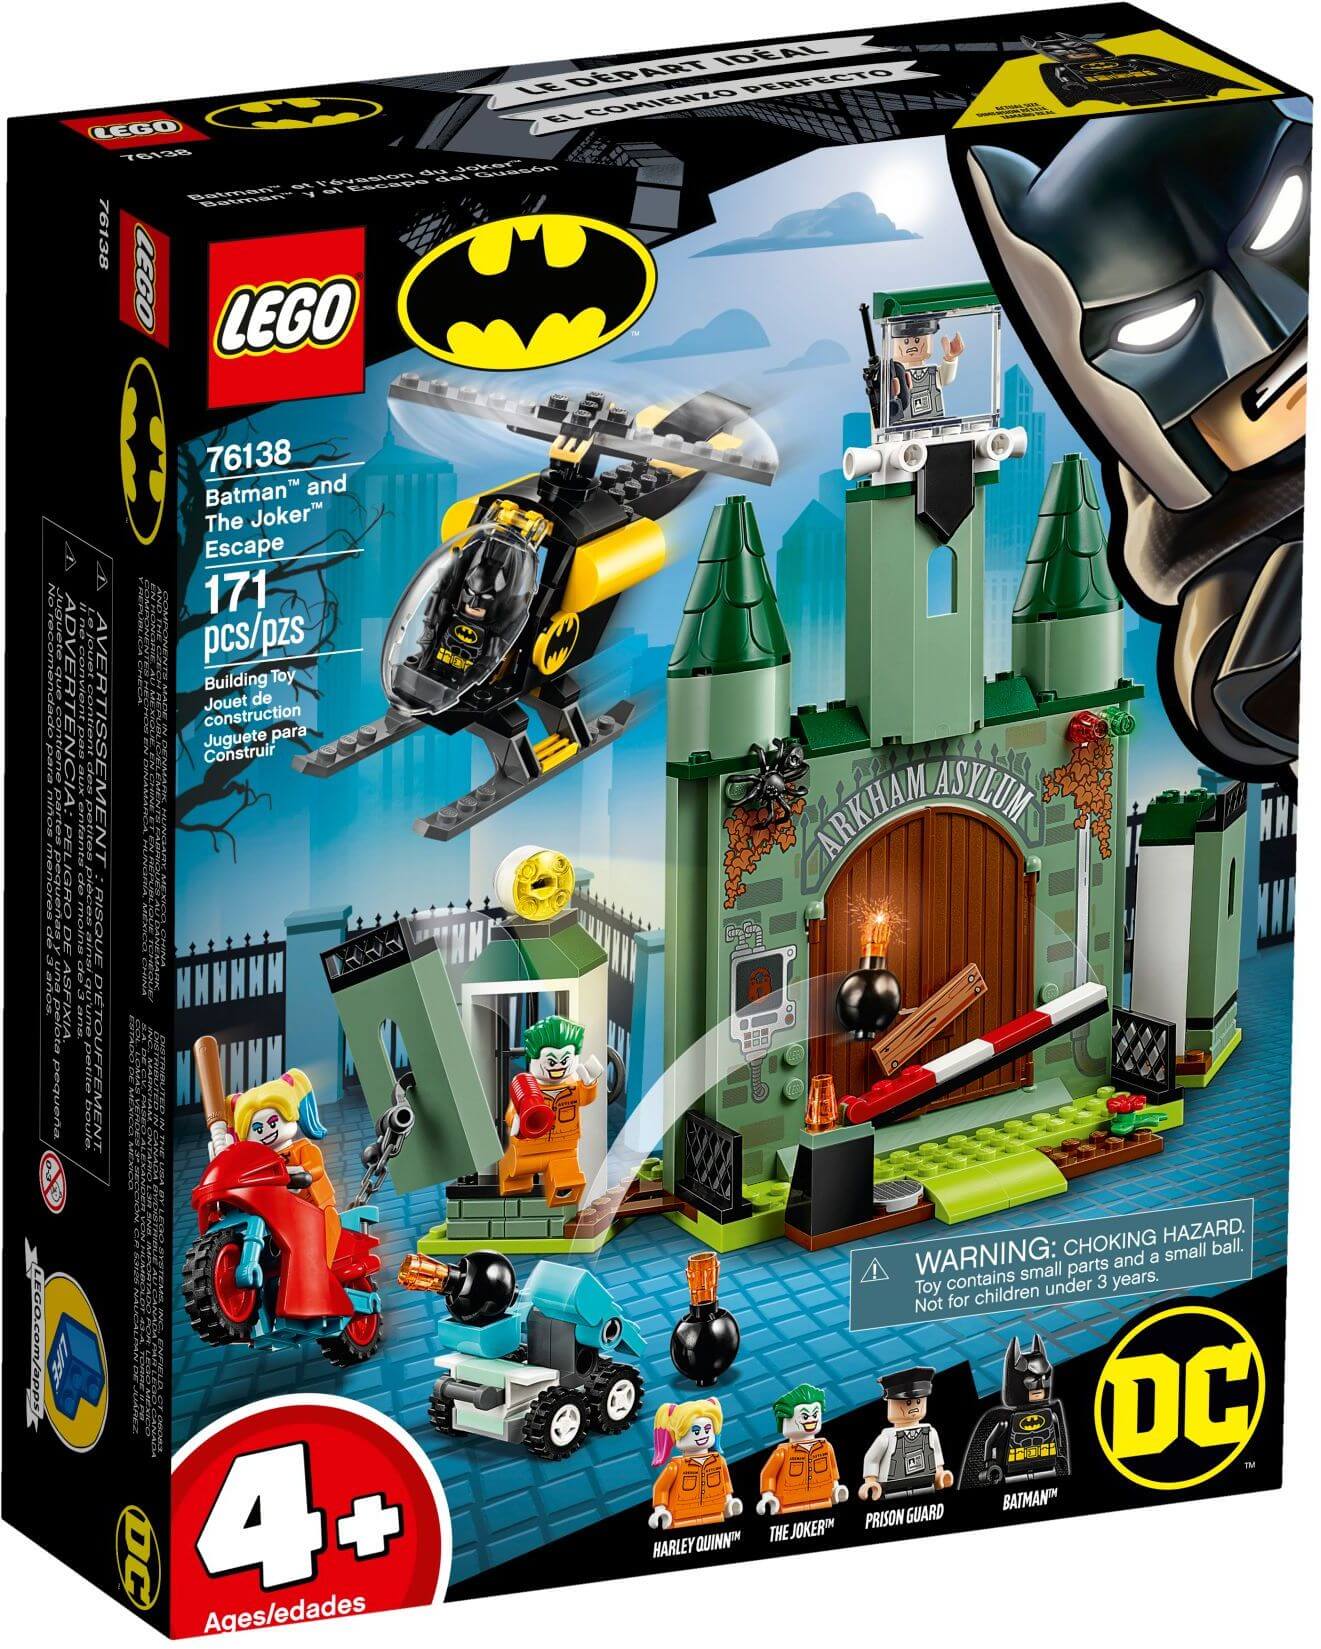 Đồ chơi LEGO DC Comics Super Heroes 76138 - Batman đại chiến Joker (LEGO  76138 Batman™ and The Joker™ Escape)